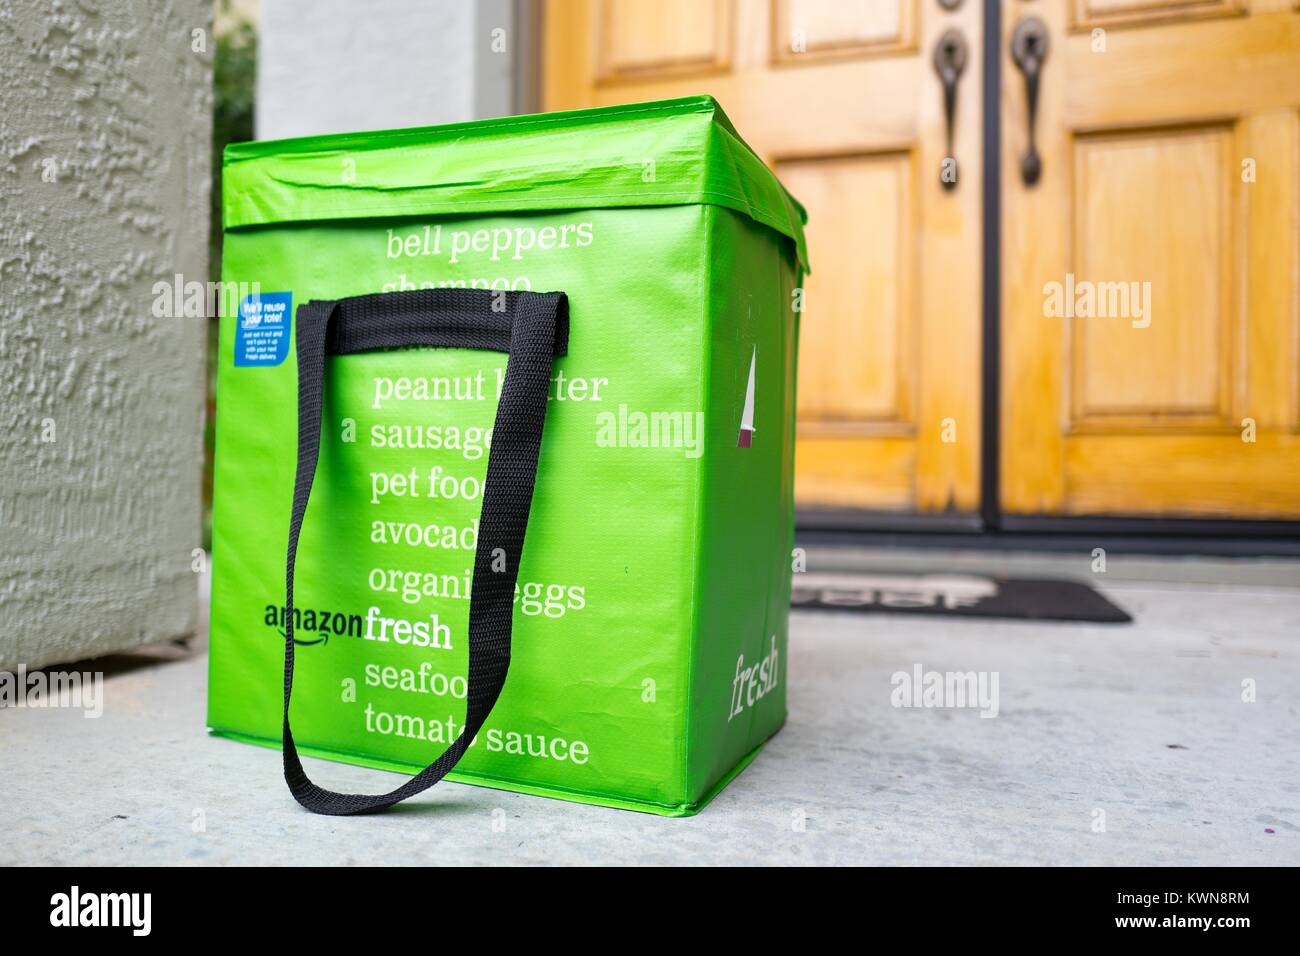 Grüne cold pack Tasche für Amazon frische Lebensmittel Lieferservice, mit  Amazon Logo und Text Liste der Lebensmittel, die mit dem Service bestellt  werden kann, vor der Tür eines Vorstadthaus in der San